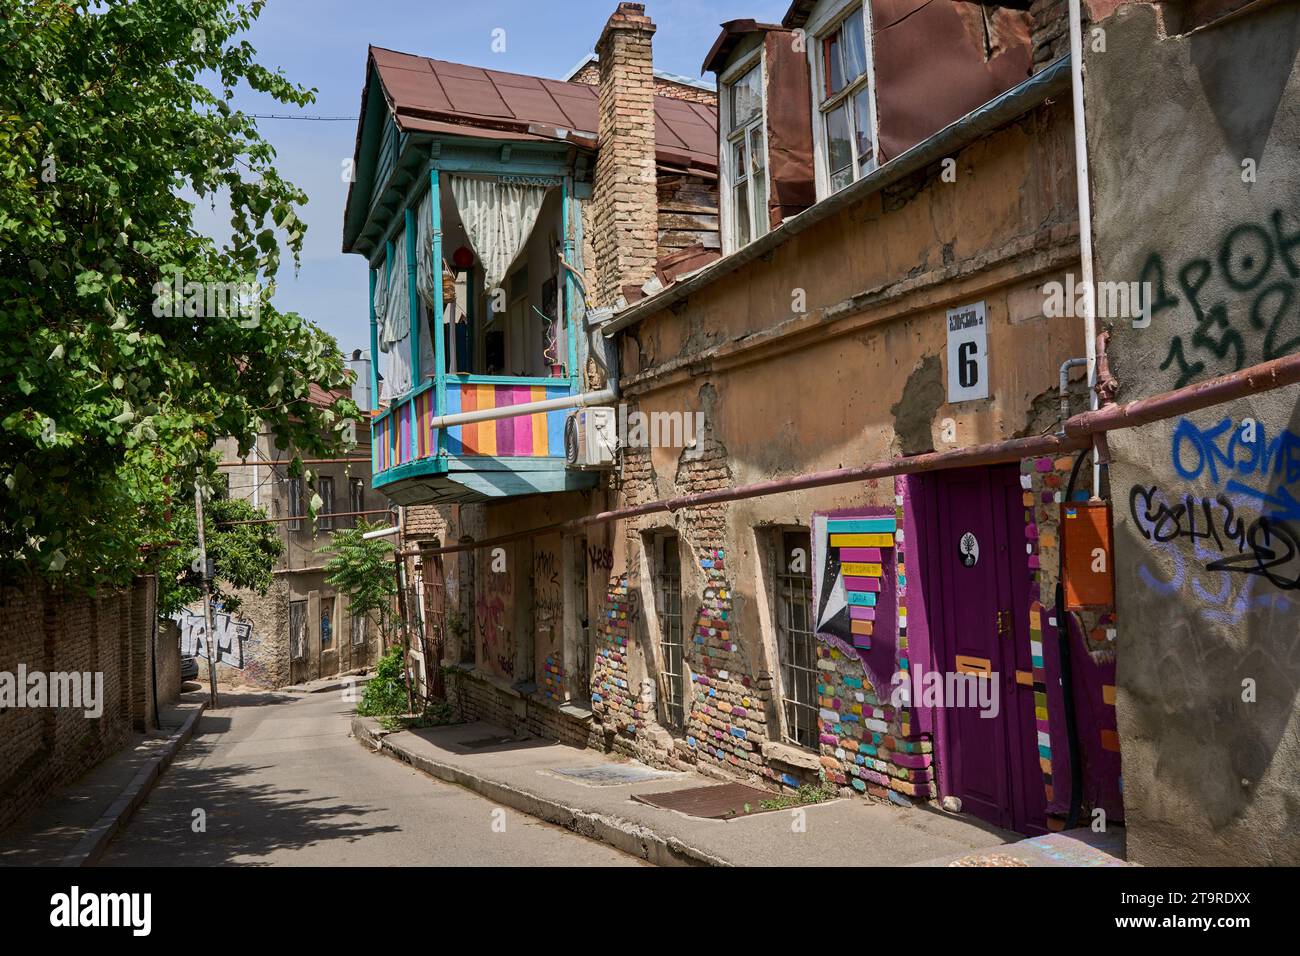 Strasse mit alten renovierungsbedürftigen Häusern, bunt angemalter Balkon, Betlemi Viertel, Stadtteil Kala, Altstadt, Tiflis, Tbilissi, Georgien Stock Photo